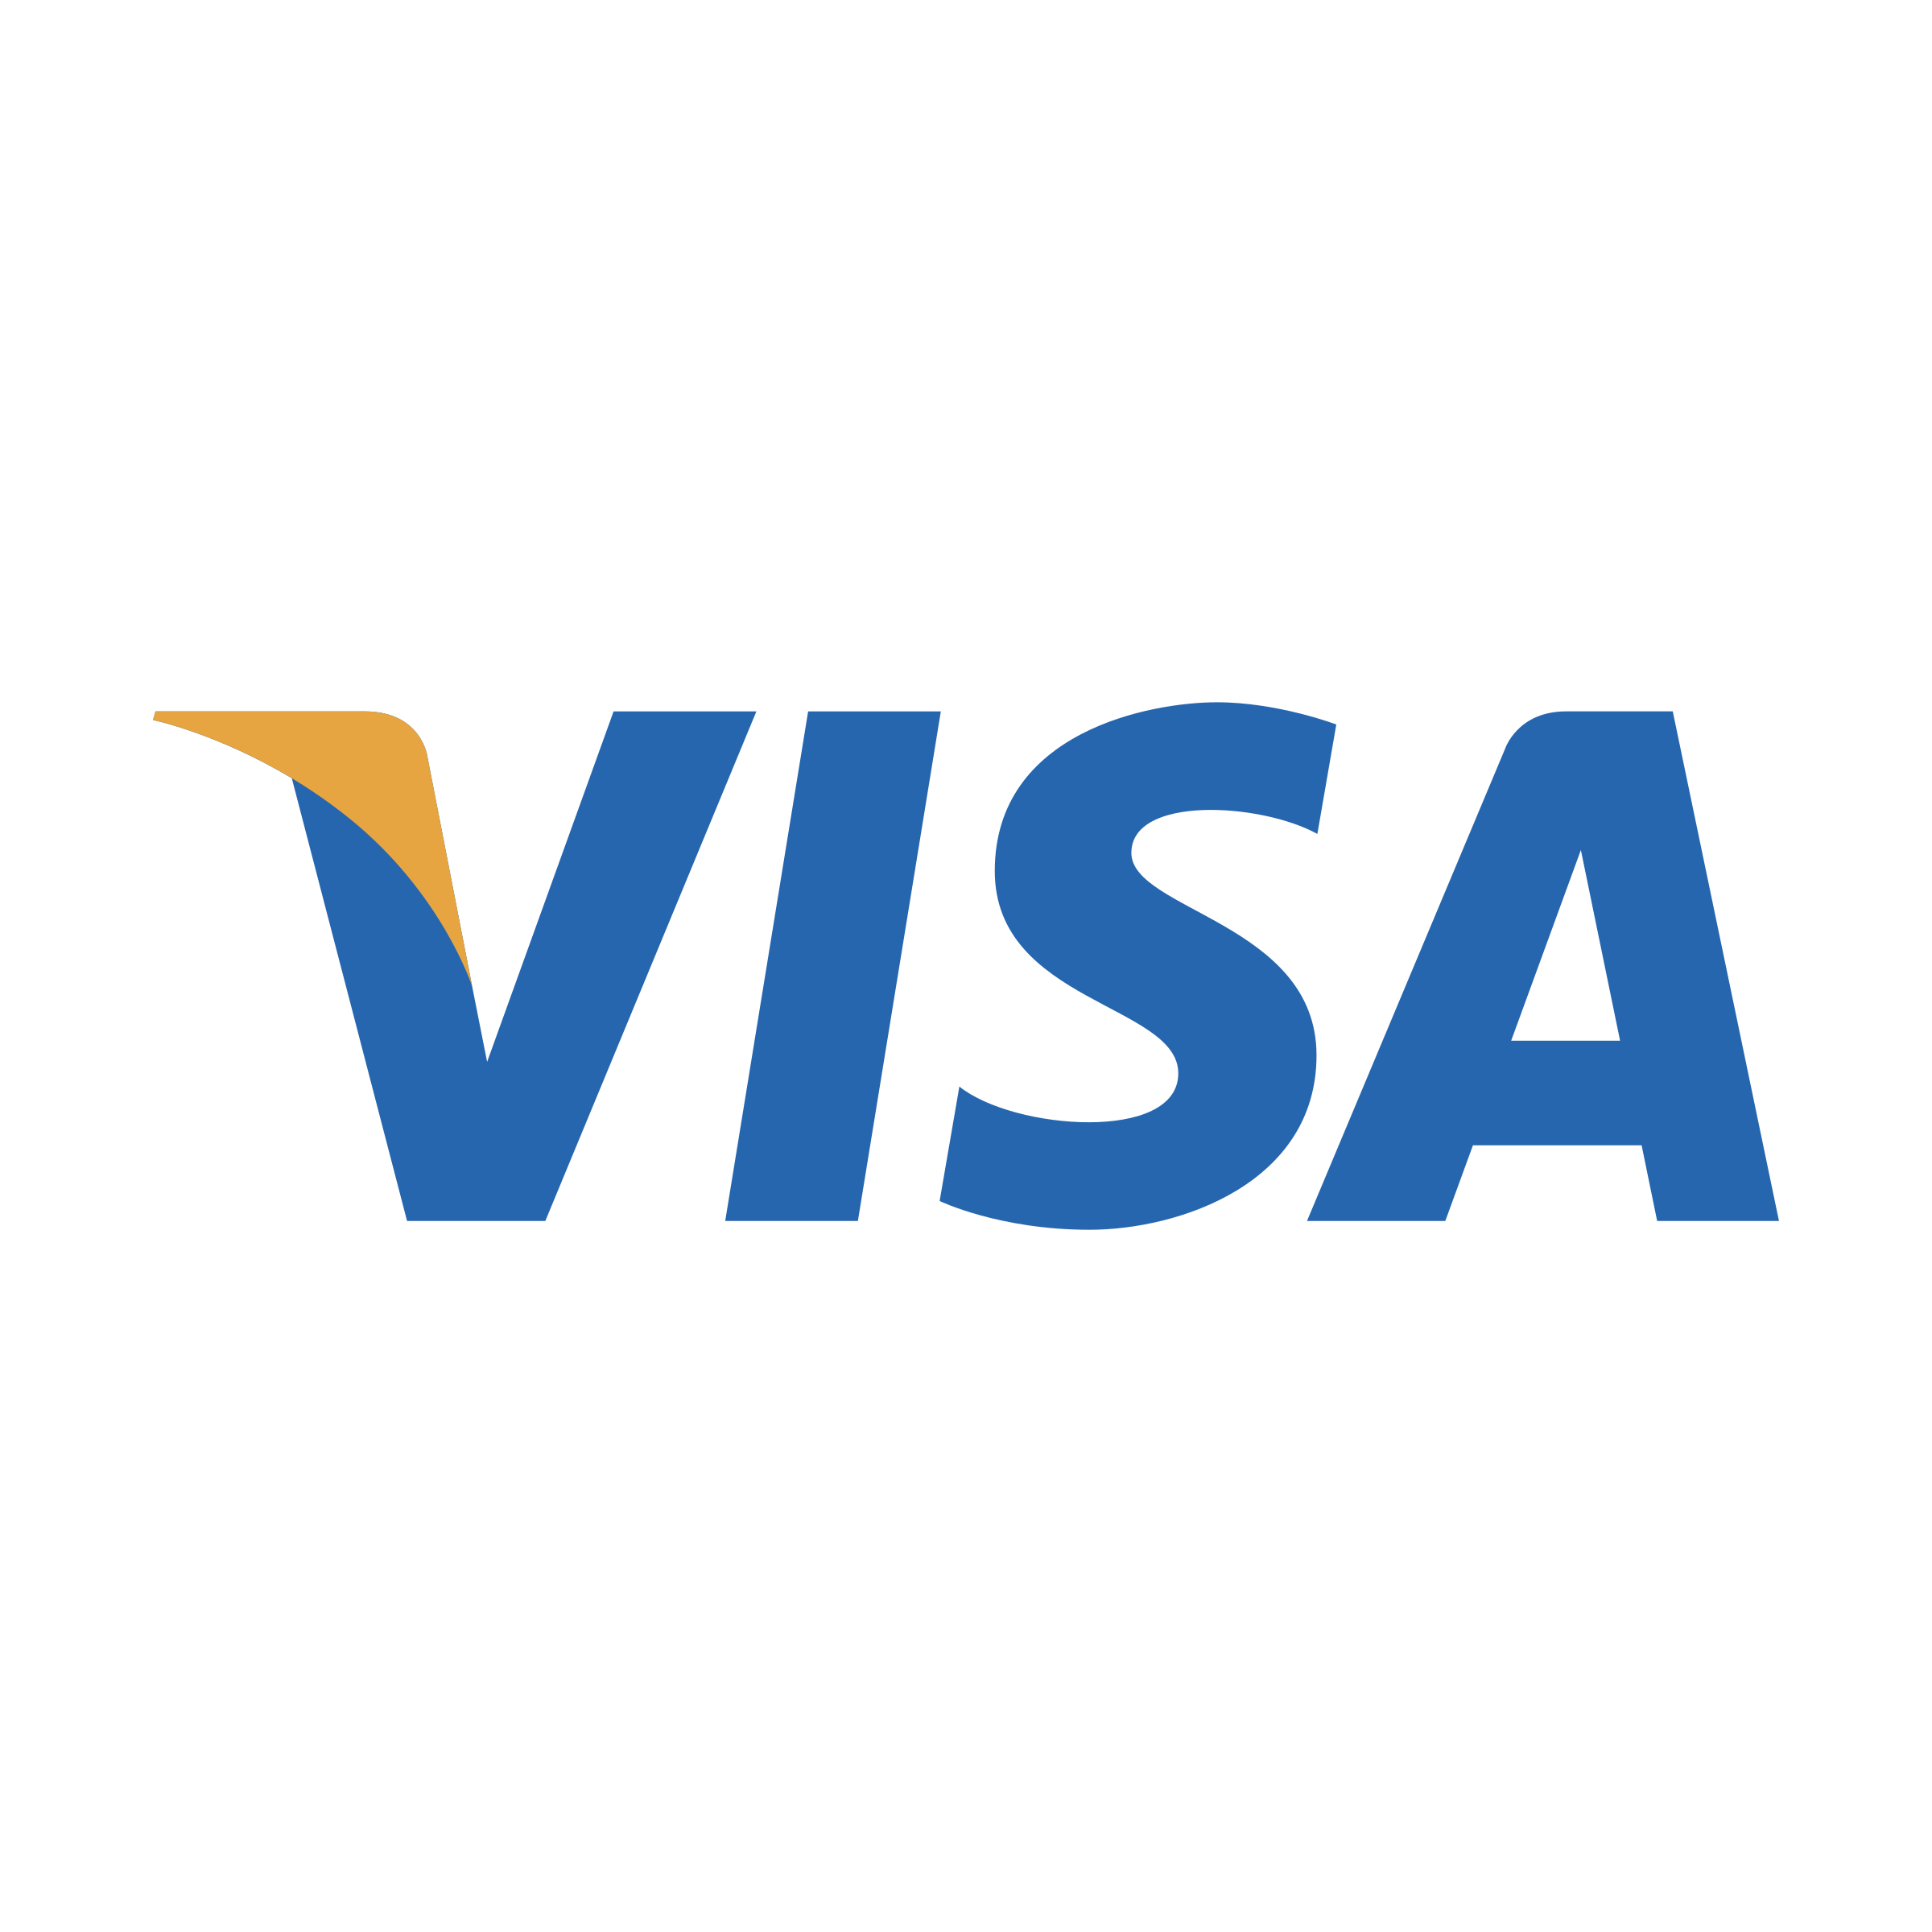 Visa Logo Transparent Background - KibrisPDR